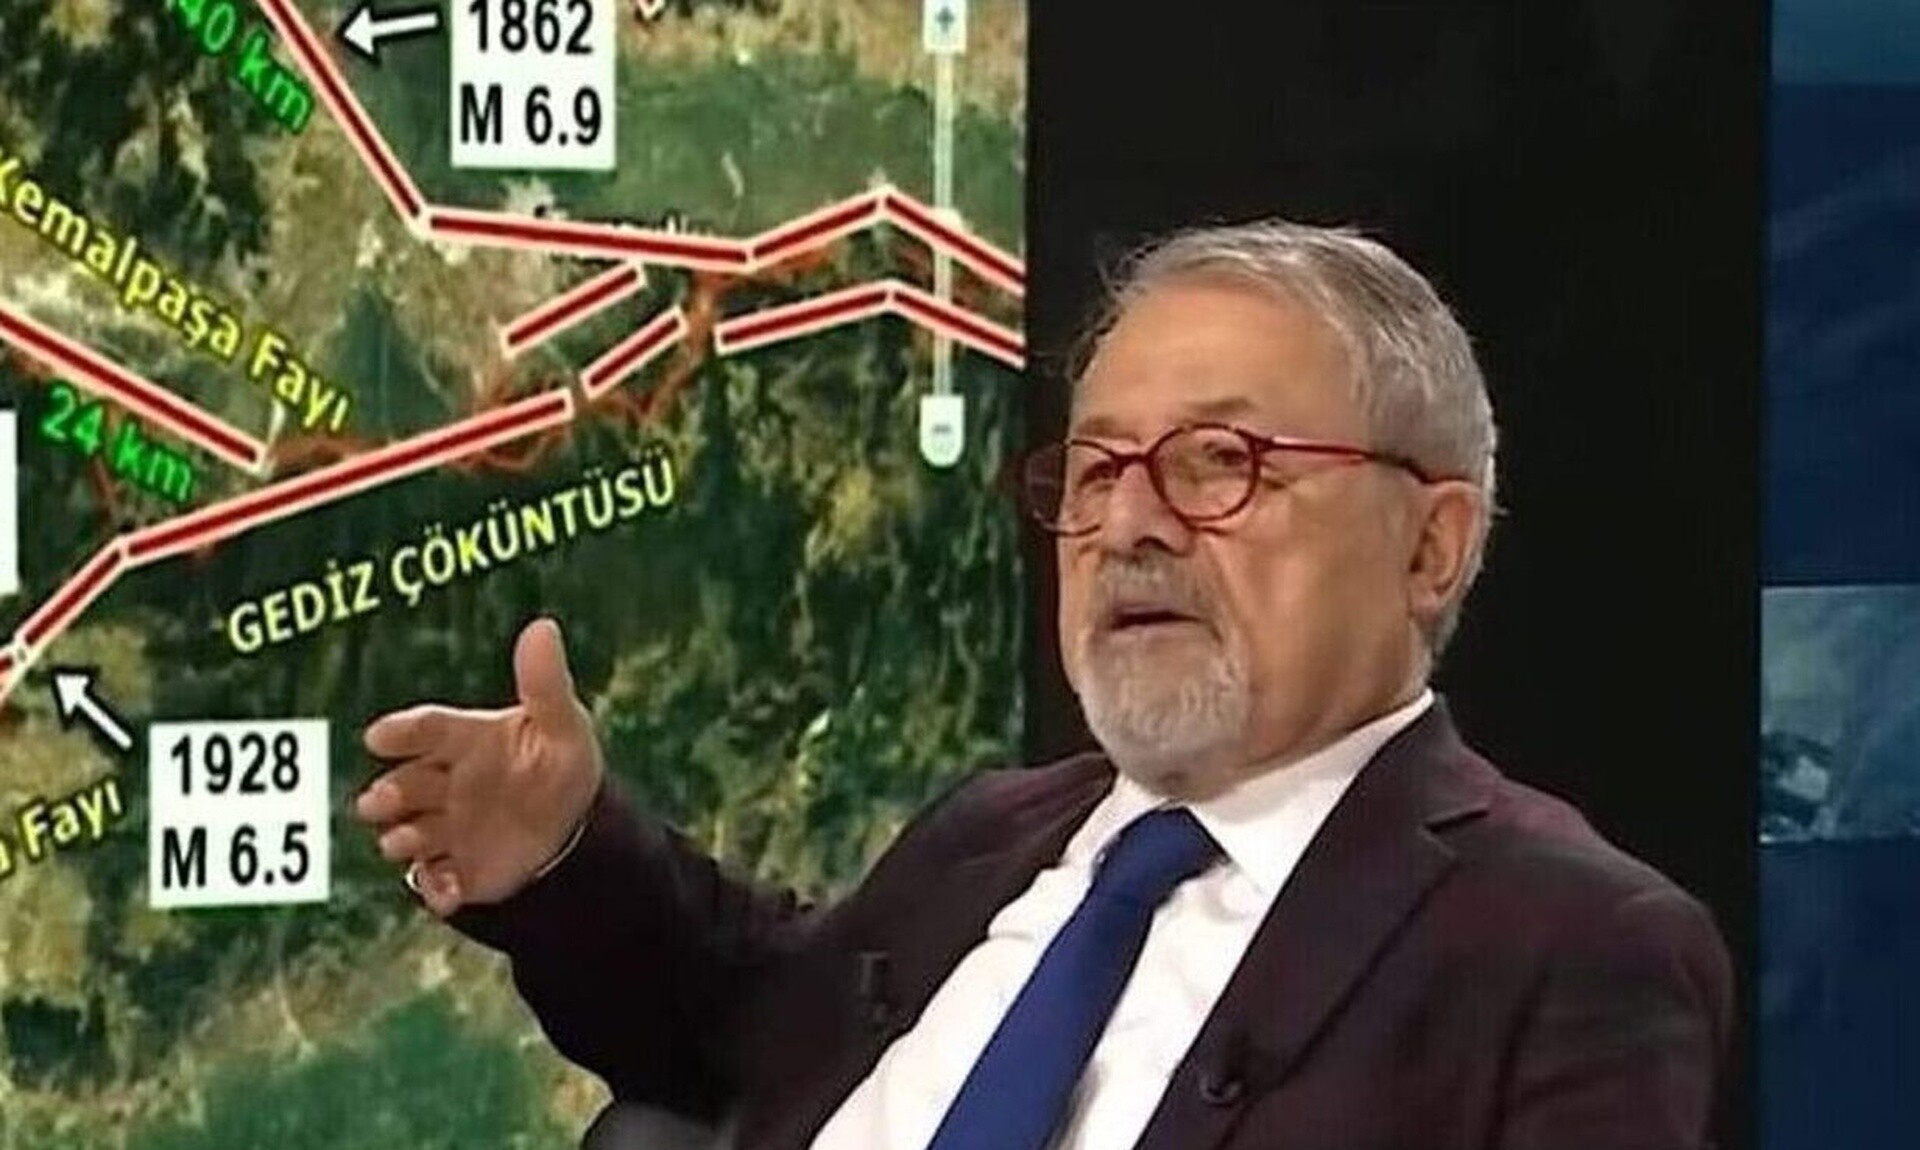 Νέες δηλώσεις του Τούρκου καθηγητή για τον σεισμό στην Κωνσταντινούπολη: «Τον αναμένουμε άμεσα» Ειδήσεις